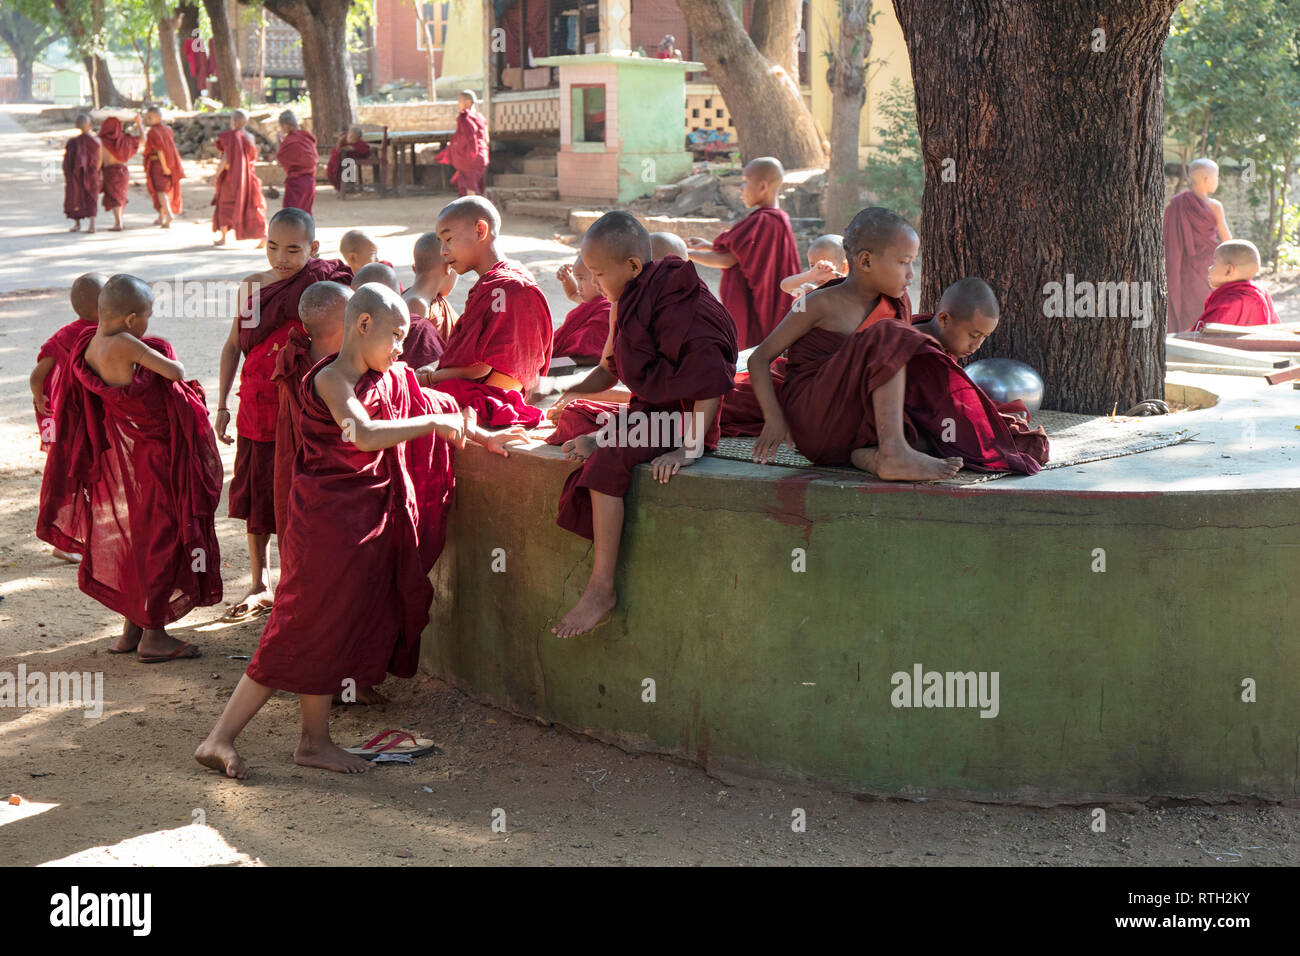 Les moines novices jouer dans un monastère de Nyaung U, Bagan, Myanmar (Birmanie). Banque D'Images